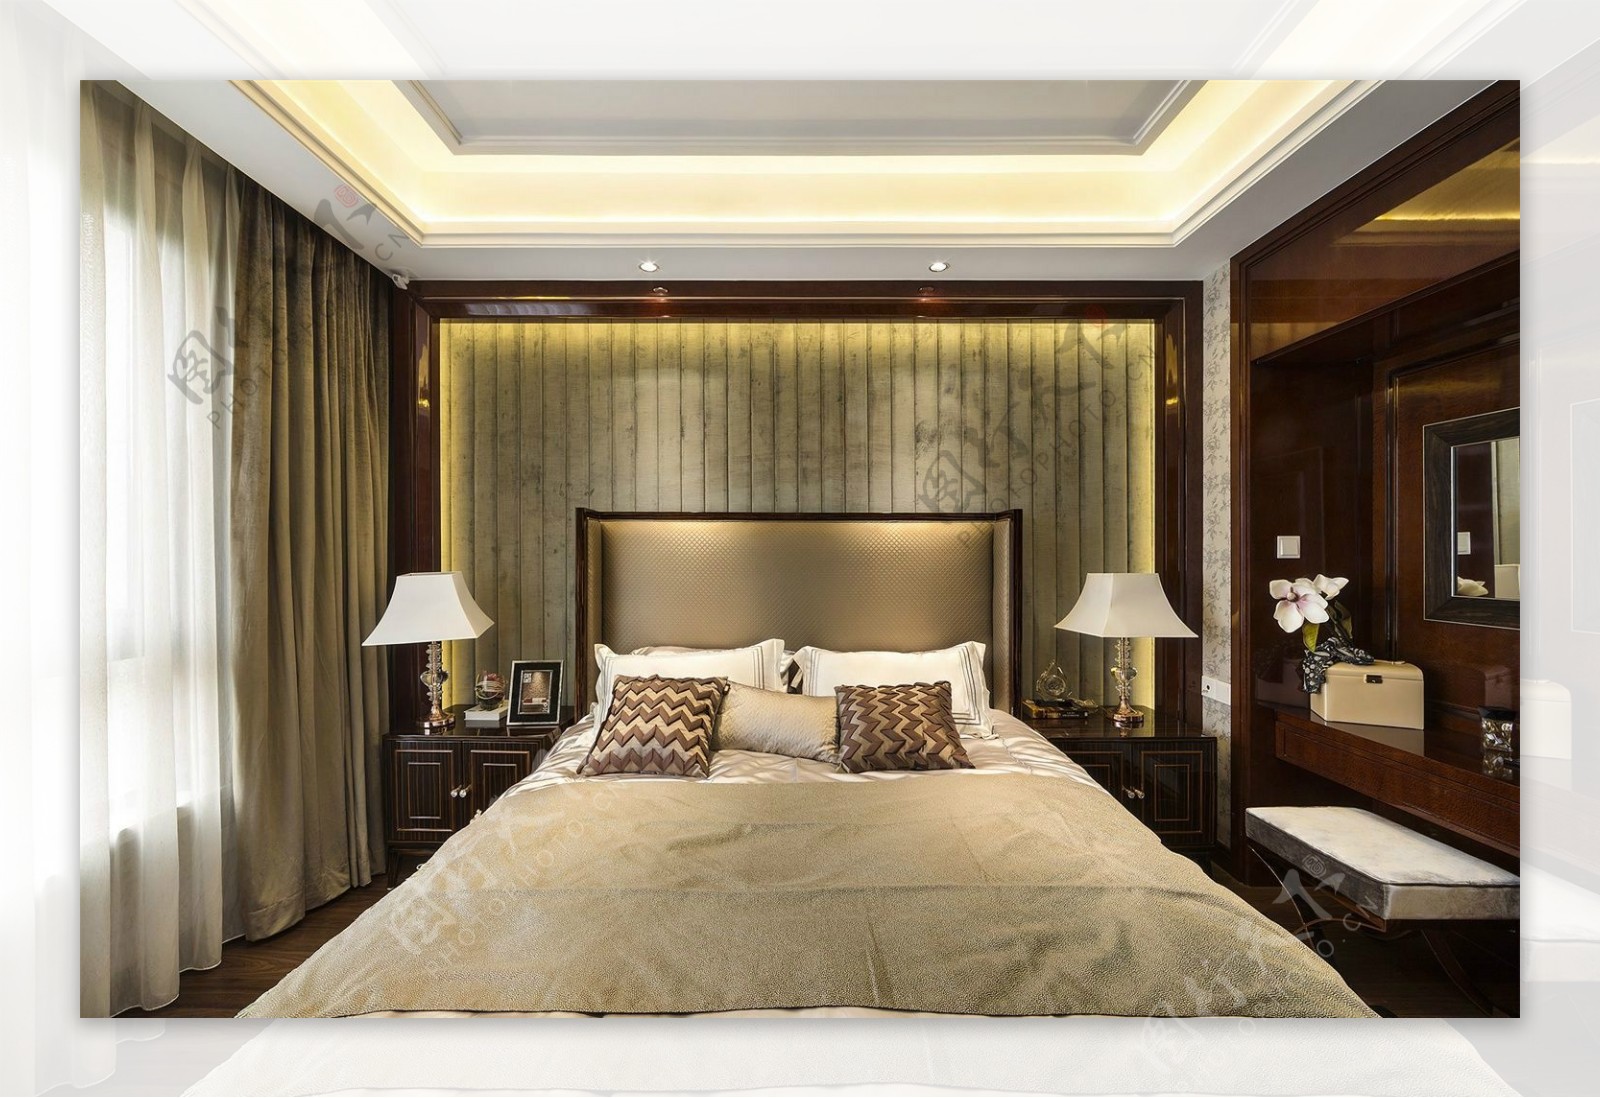 现代时尚卧室金铜色床头室内装修效果图